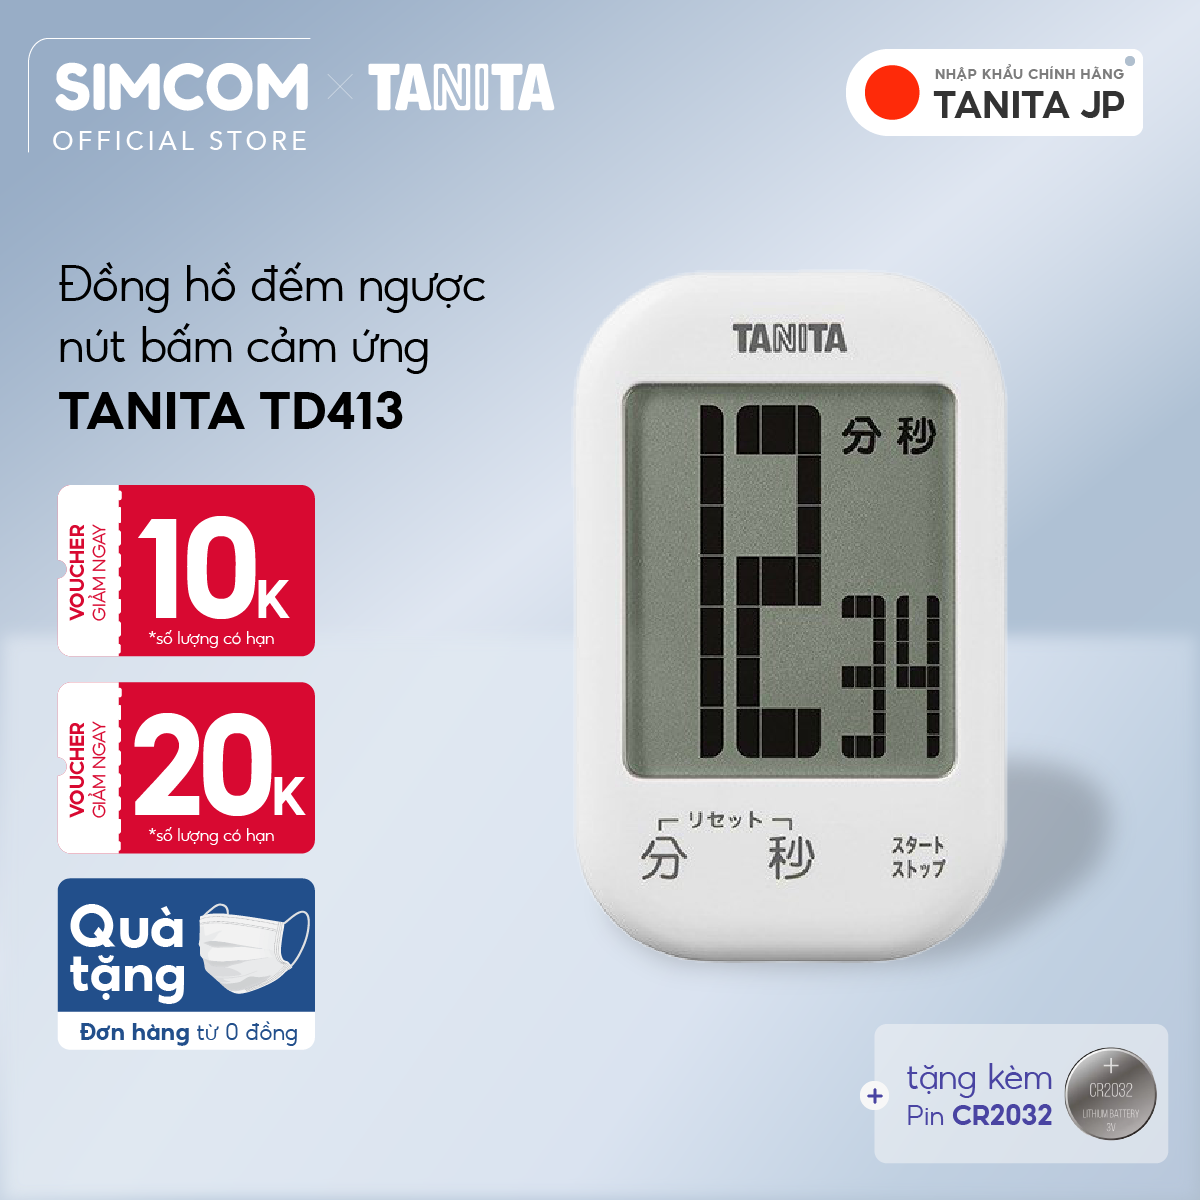 Hình ảnh Đồng hồ đếm ngược Tanita TD413 Nhật Bản,Đồng hồ mini đếm ngược bấm giờ,Đồng hồ mini bấm giờ,Đồng hồ hẹn giờ,Đồng hồ bếp,Đồng hồ đếm ngược thời gian,đồng hồ bấm giờ đếm ngược,Đồng hồ điện tử đếm giờ,Đồng hồ điện tử đếm ngược